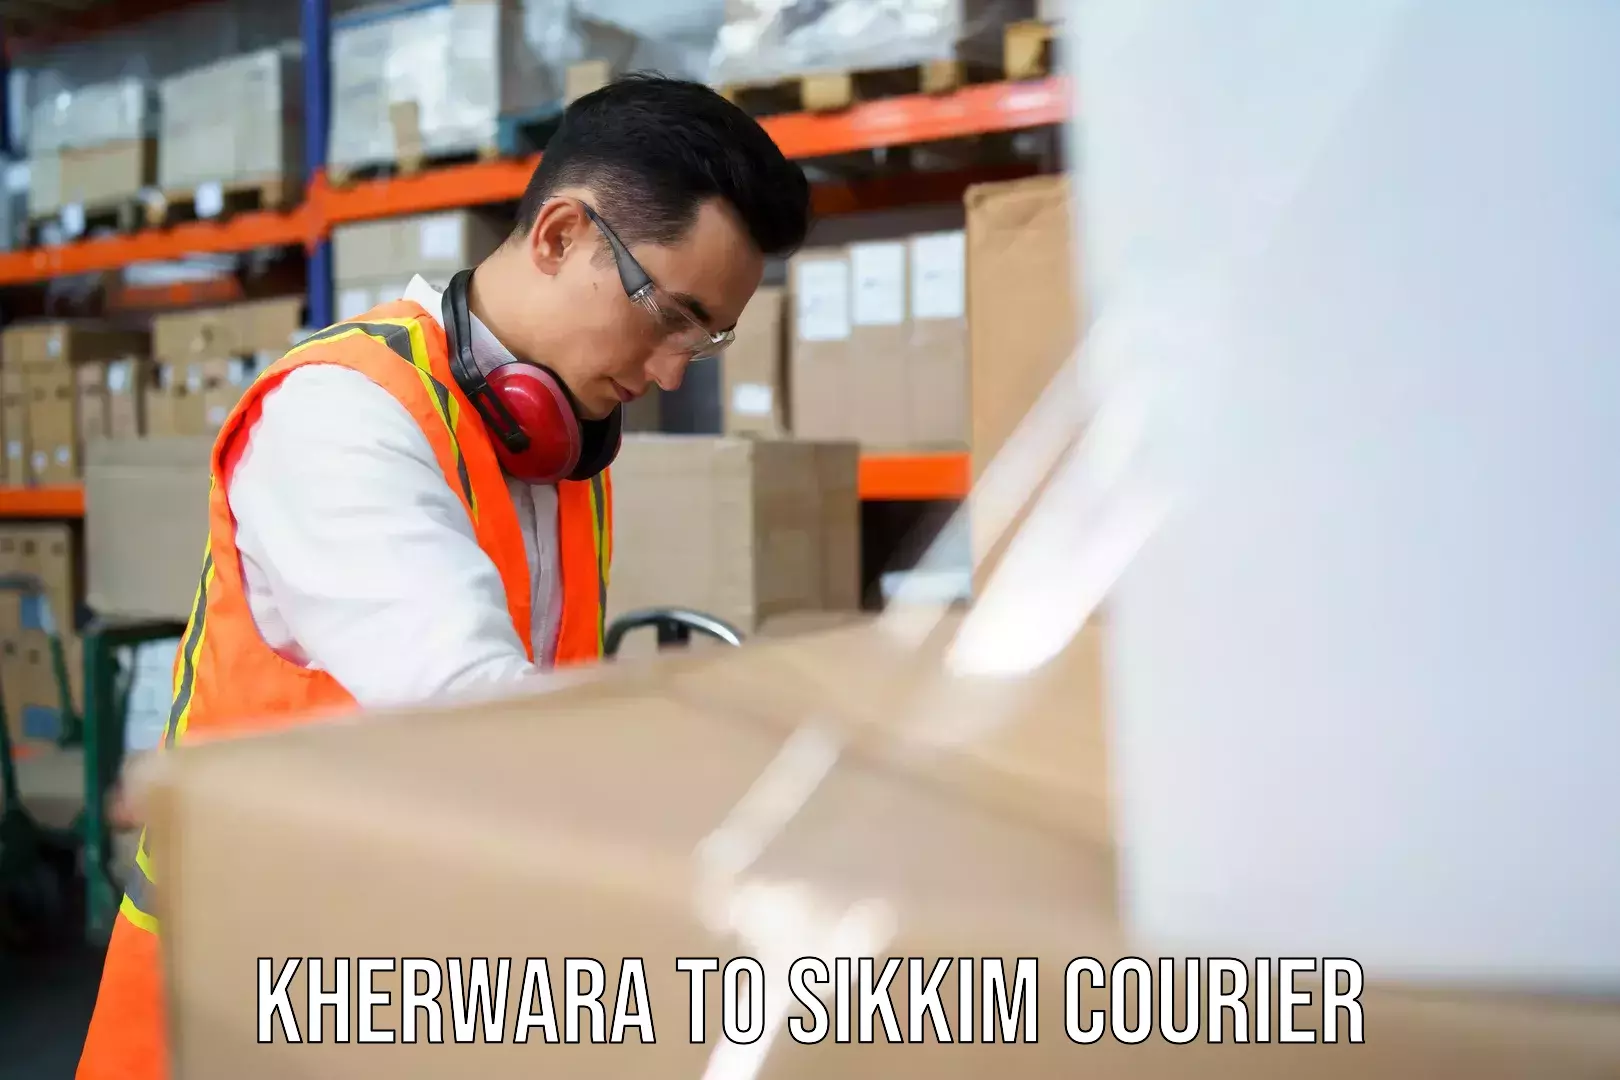 Custom courier packaging in Kherwara to Sikkim